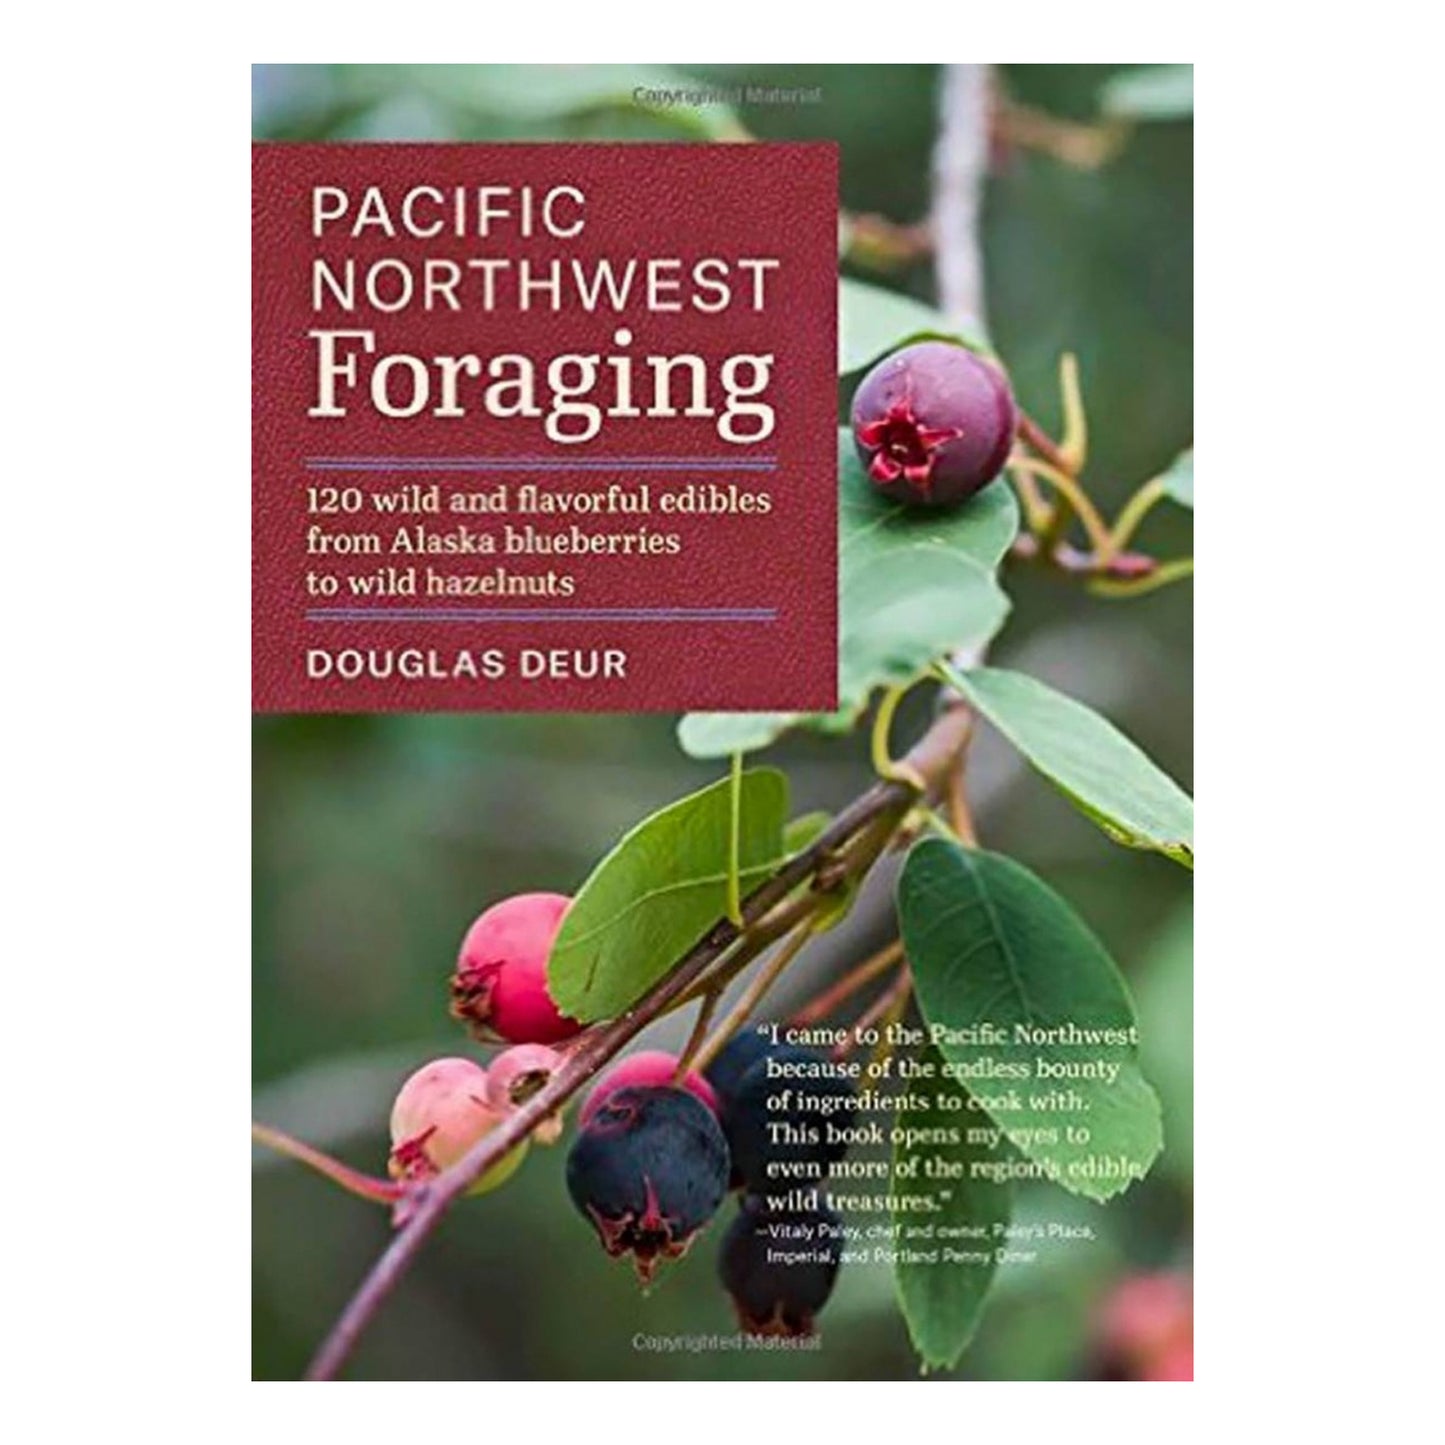 Pacific Northwest Foraging by Douglas Deur